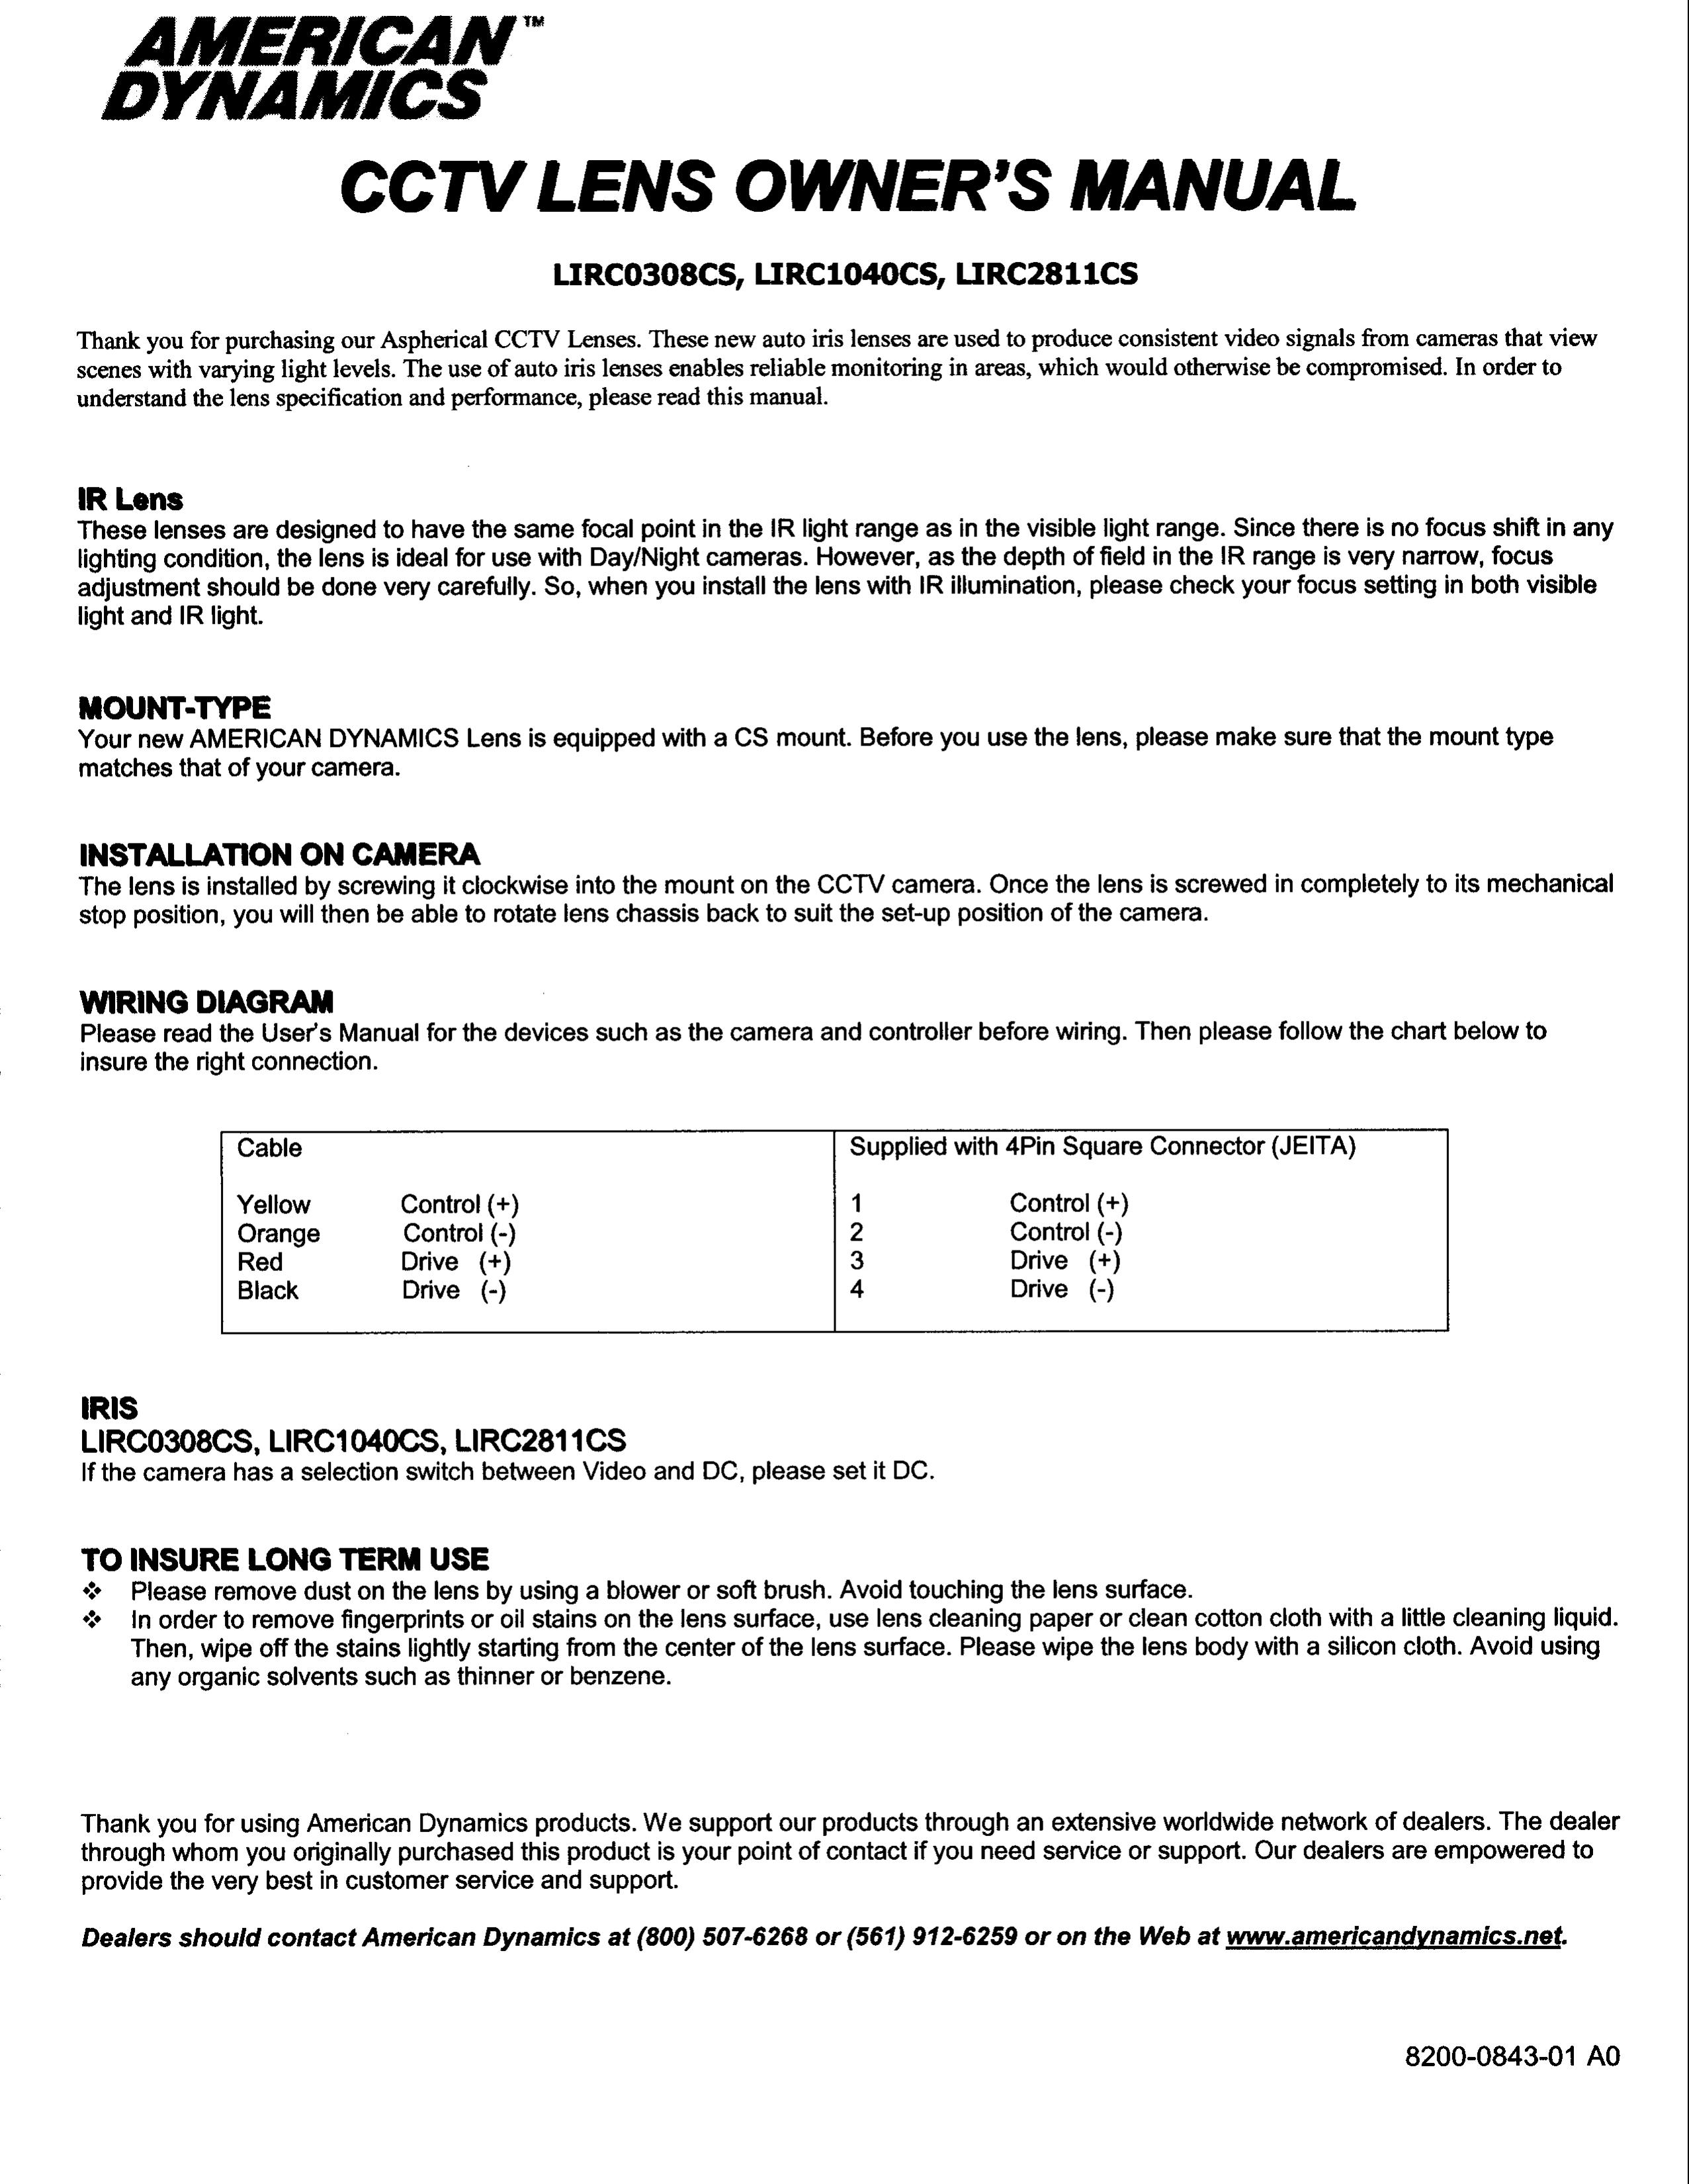 American Dynamics LIRC2811CS Camera Lens User Manual